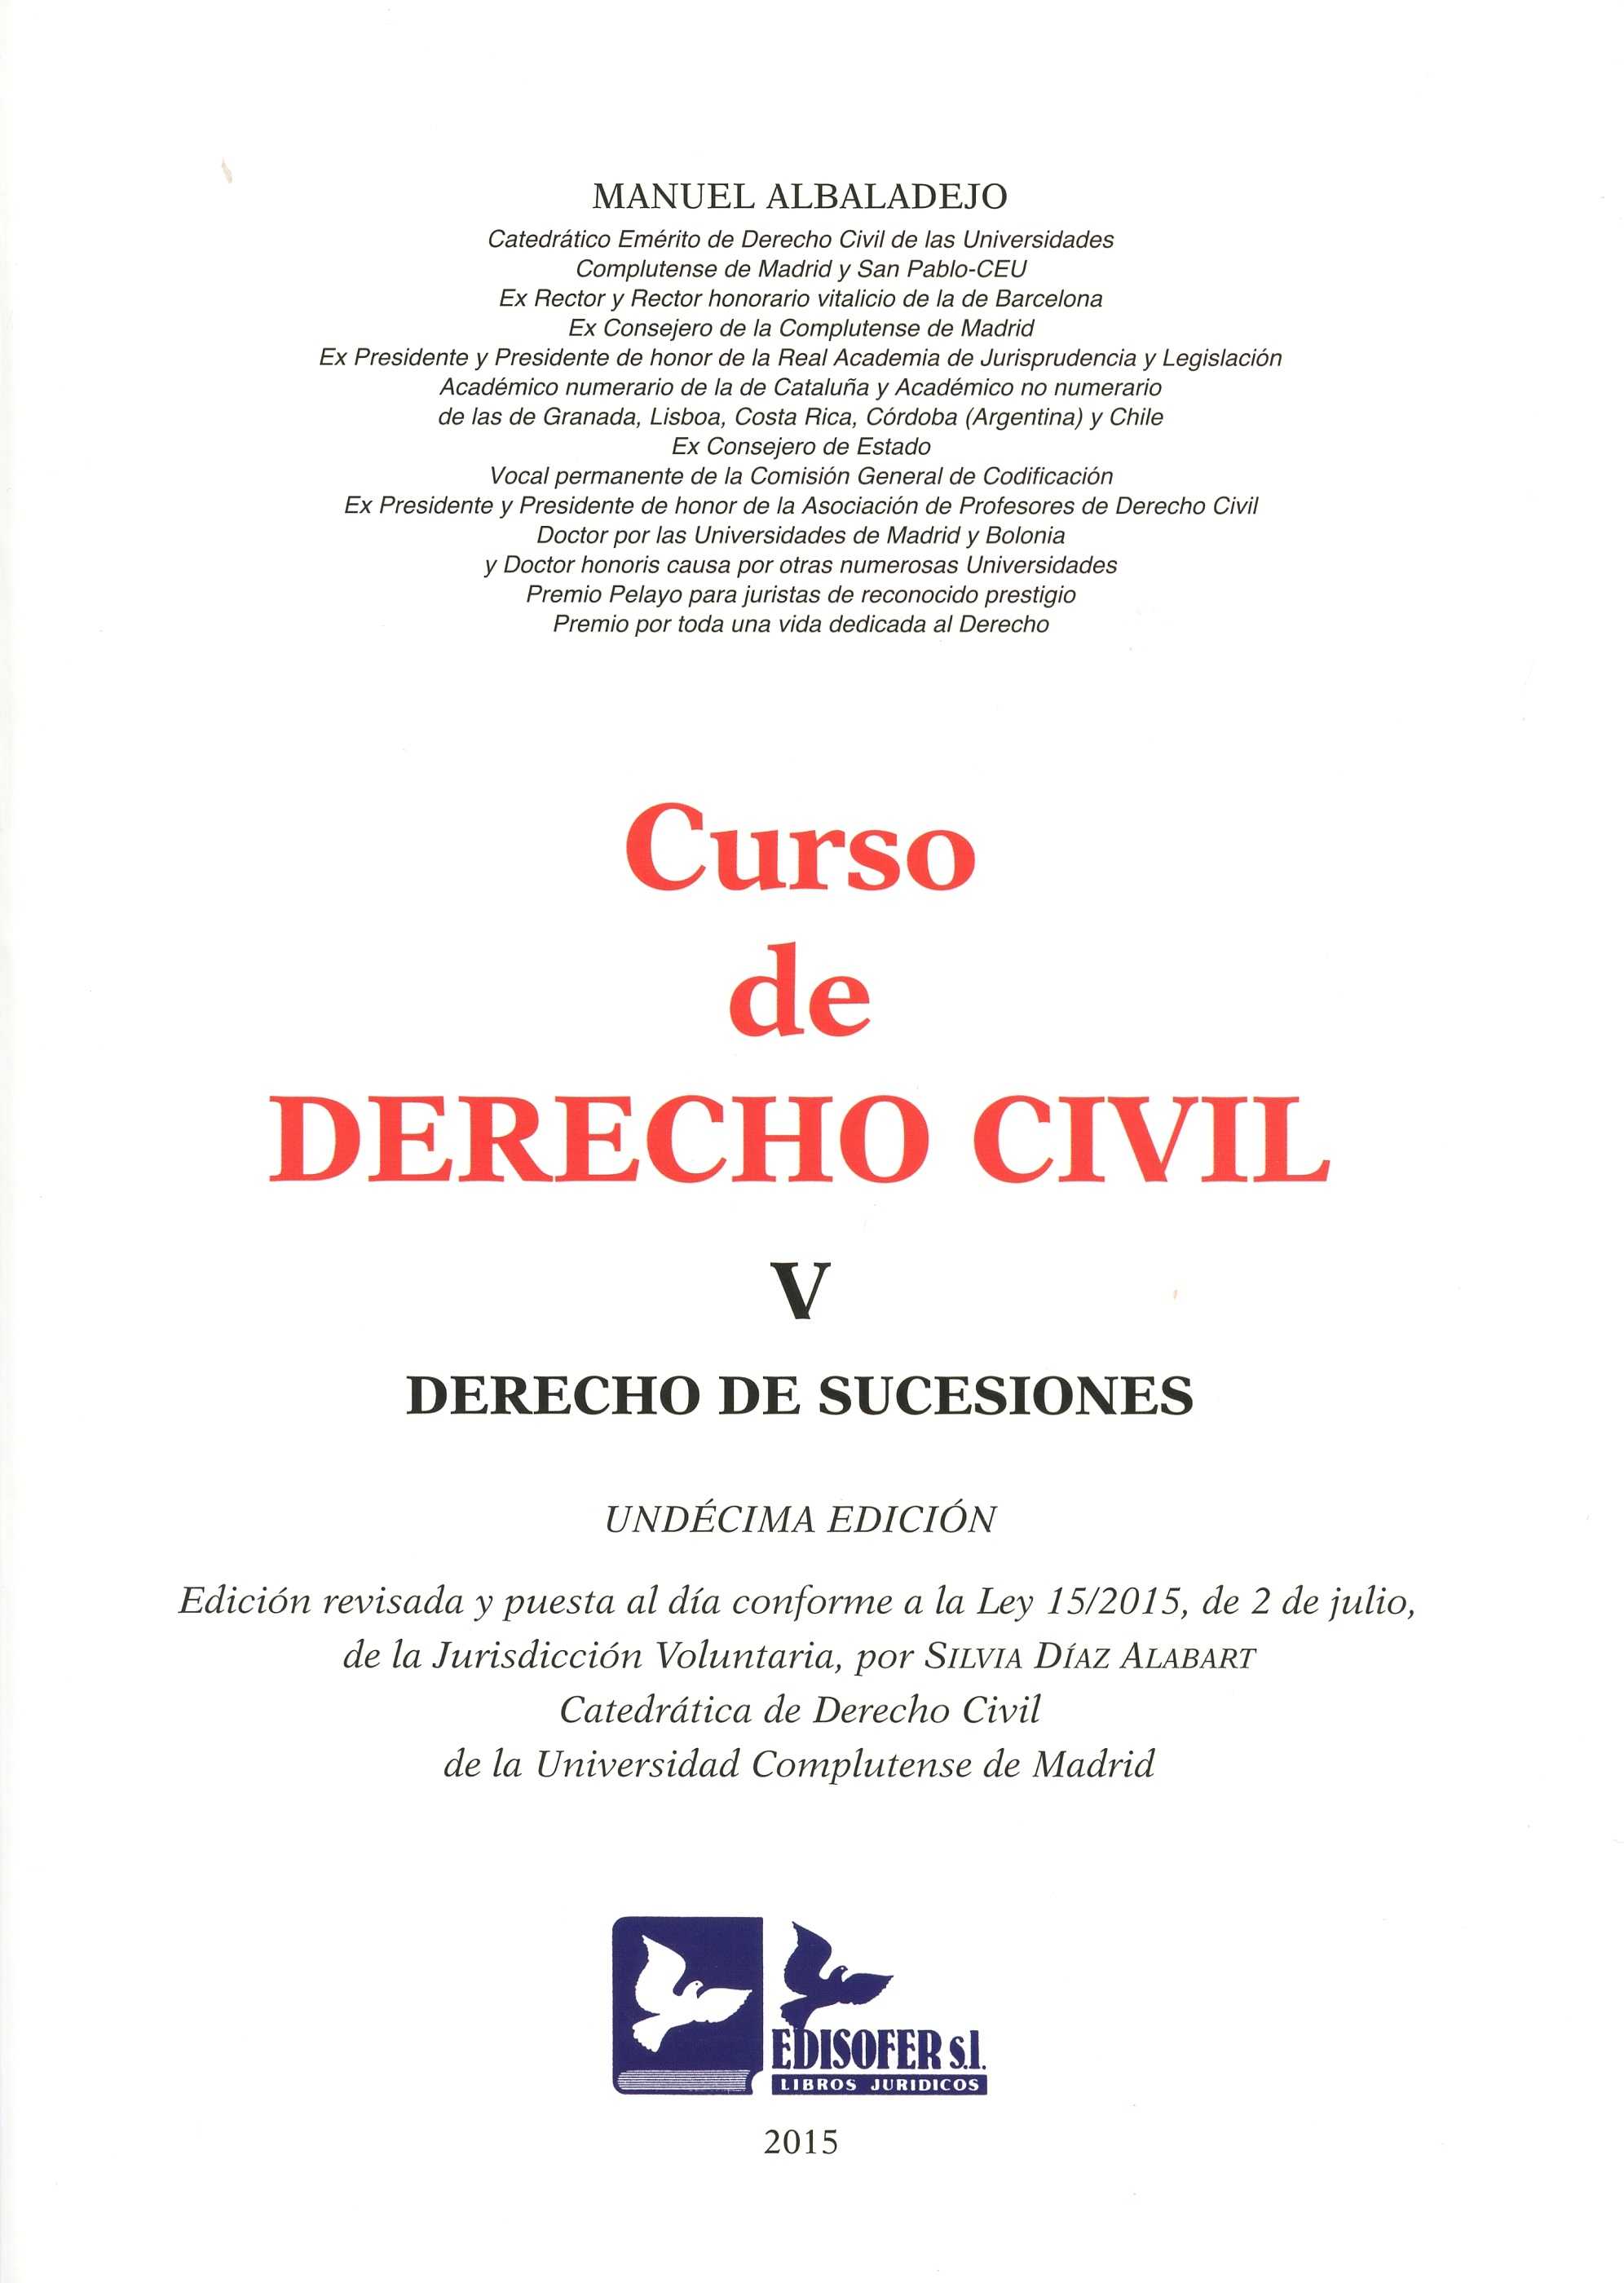 CURSO DE DERECHO CIVIL V : DERECHO DE SUCESIONES